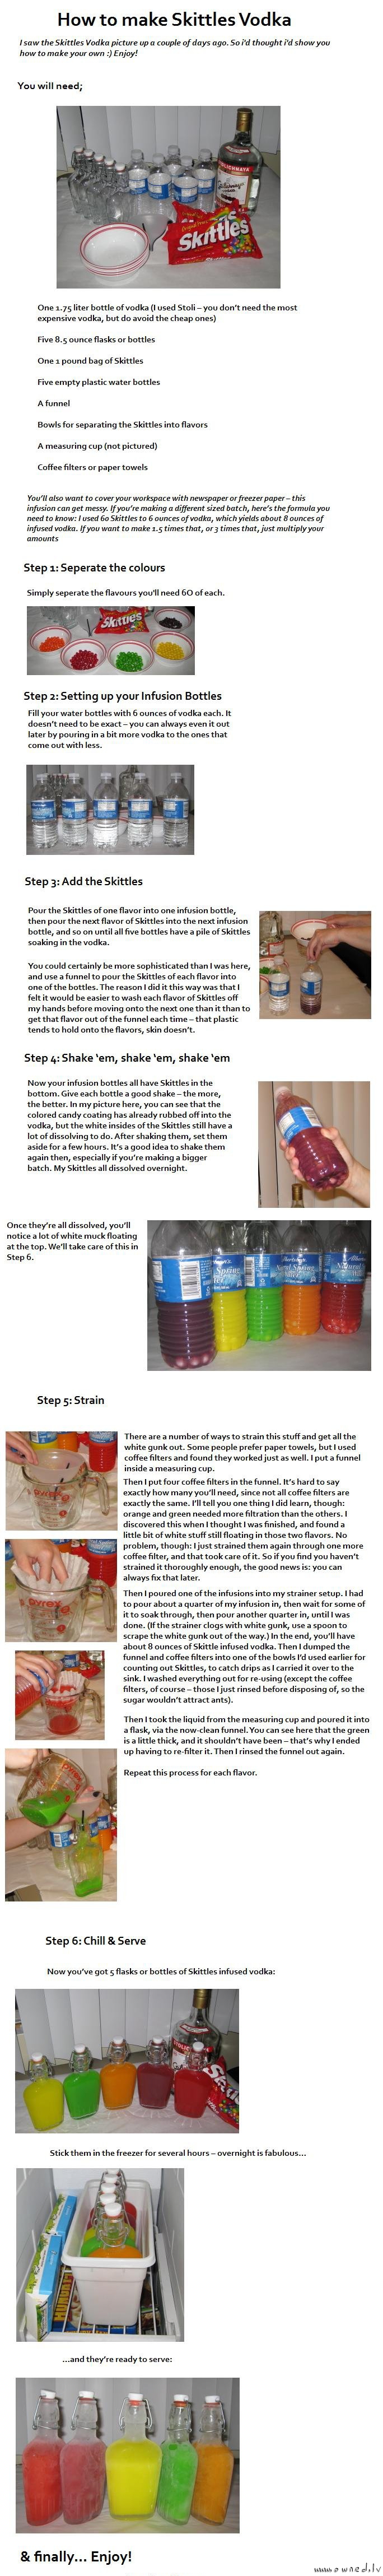 How to make skittles vodka